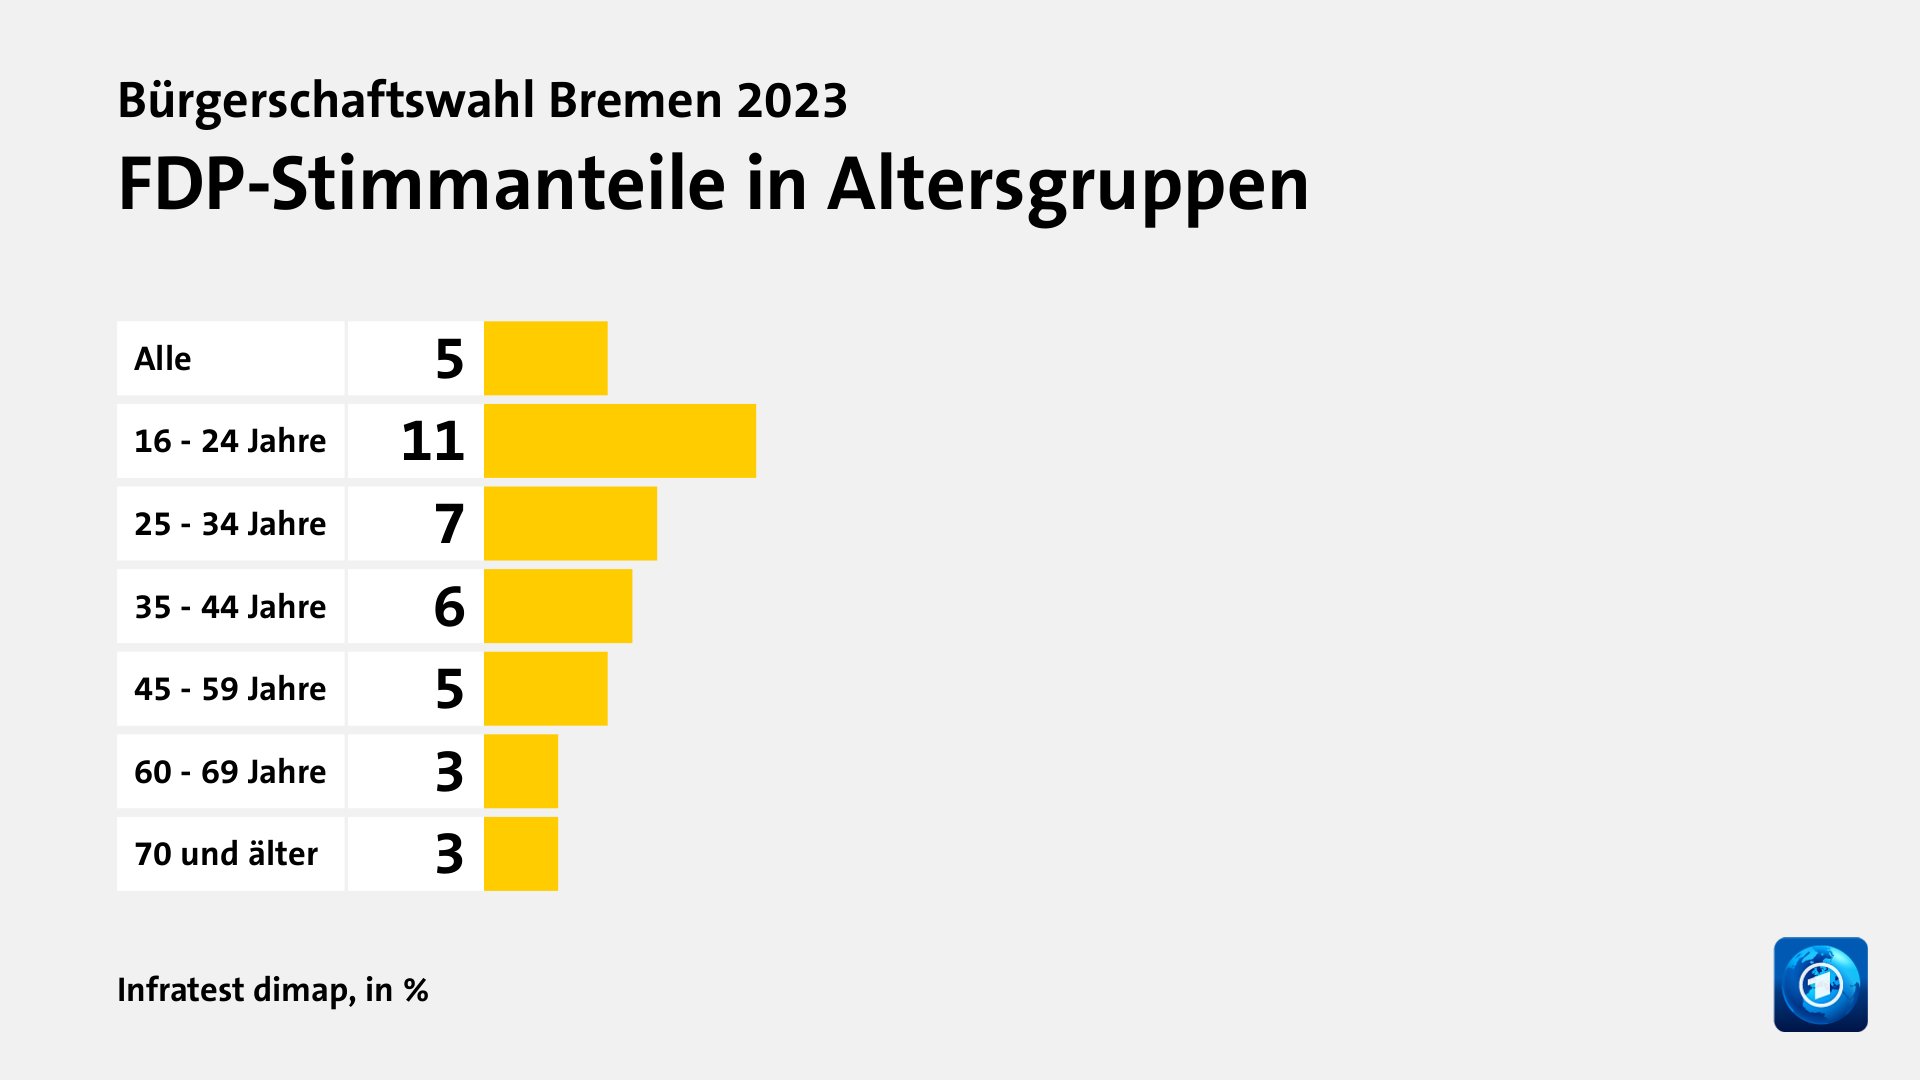 FDP-Stimmanteile in Altersgruppen, in %: Alle 5, 16 - 24 Jahre 11, 25 - 34 Jahre 7, 35 - 44 Jahre 6, 45 - 59 Jahre 5, 60 - 69 Jahre 3, 70 und älter 3, Quelle: Infratest dimap